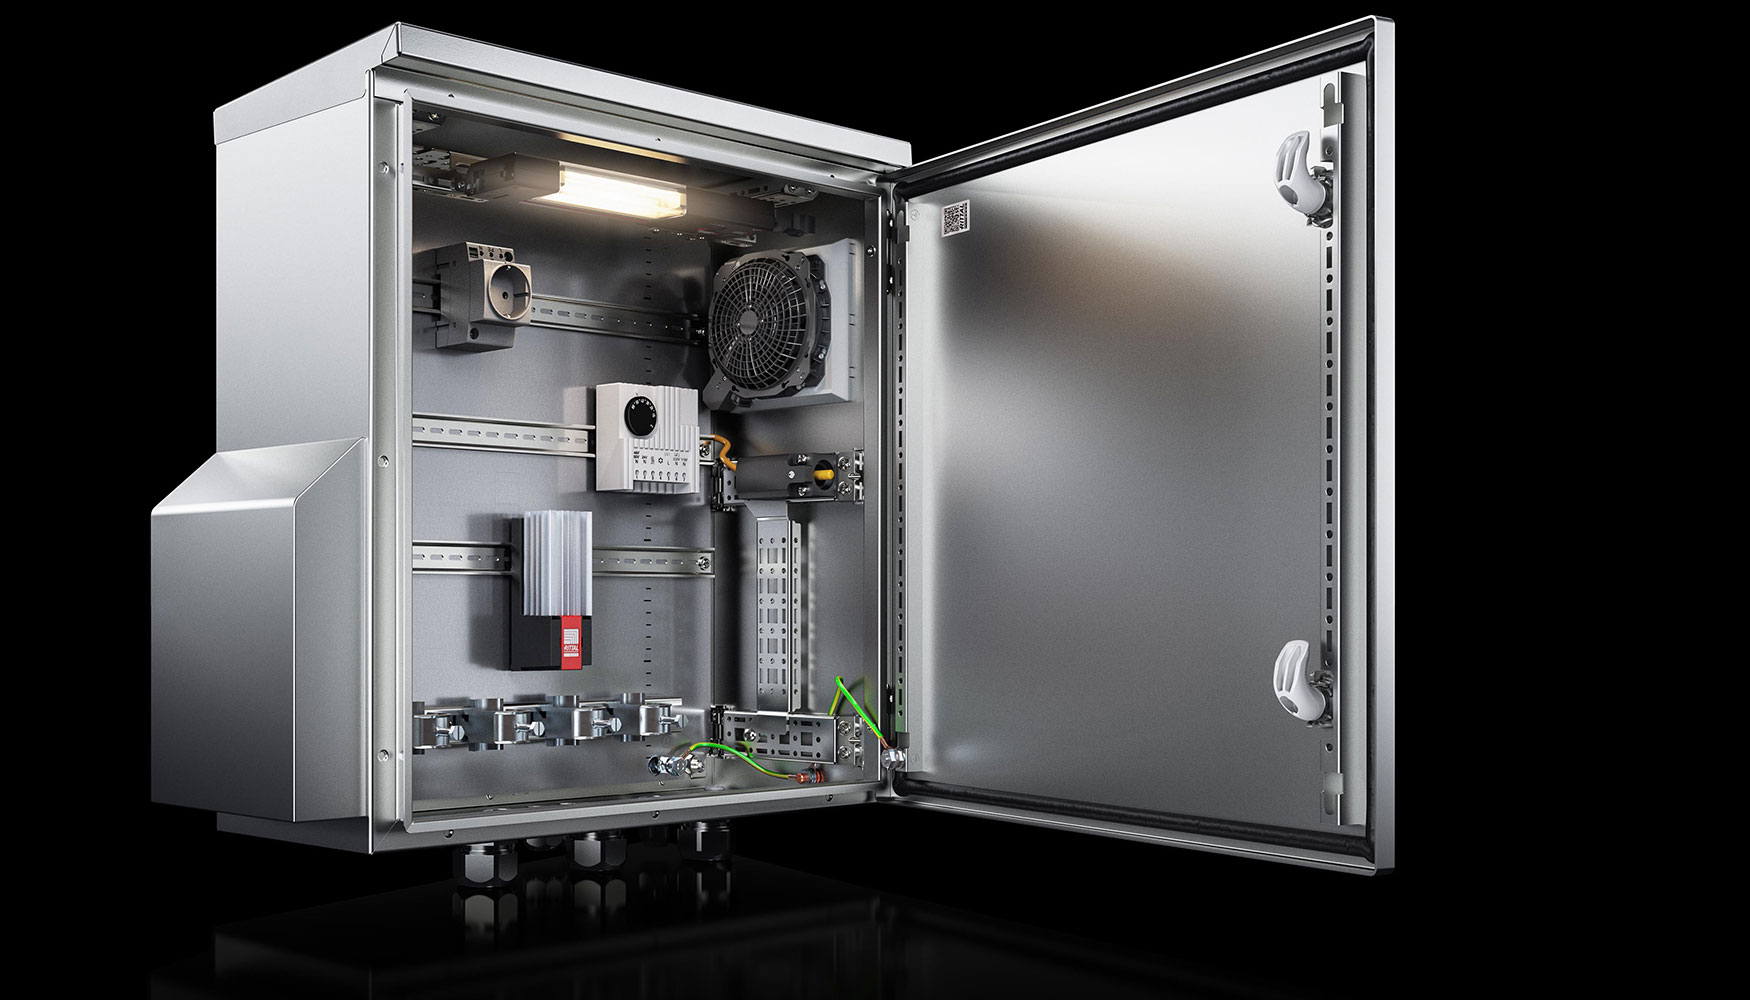 El nuevo armario compacto AX en acero inoxidable de Rittal resiste incluso a productos qumicos, salitre o humedad muy alta...